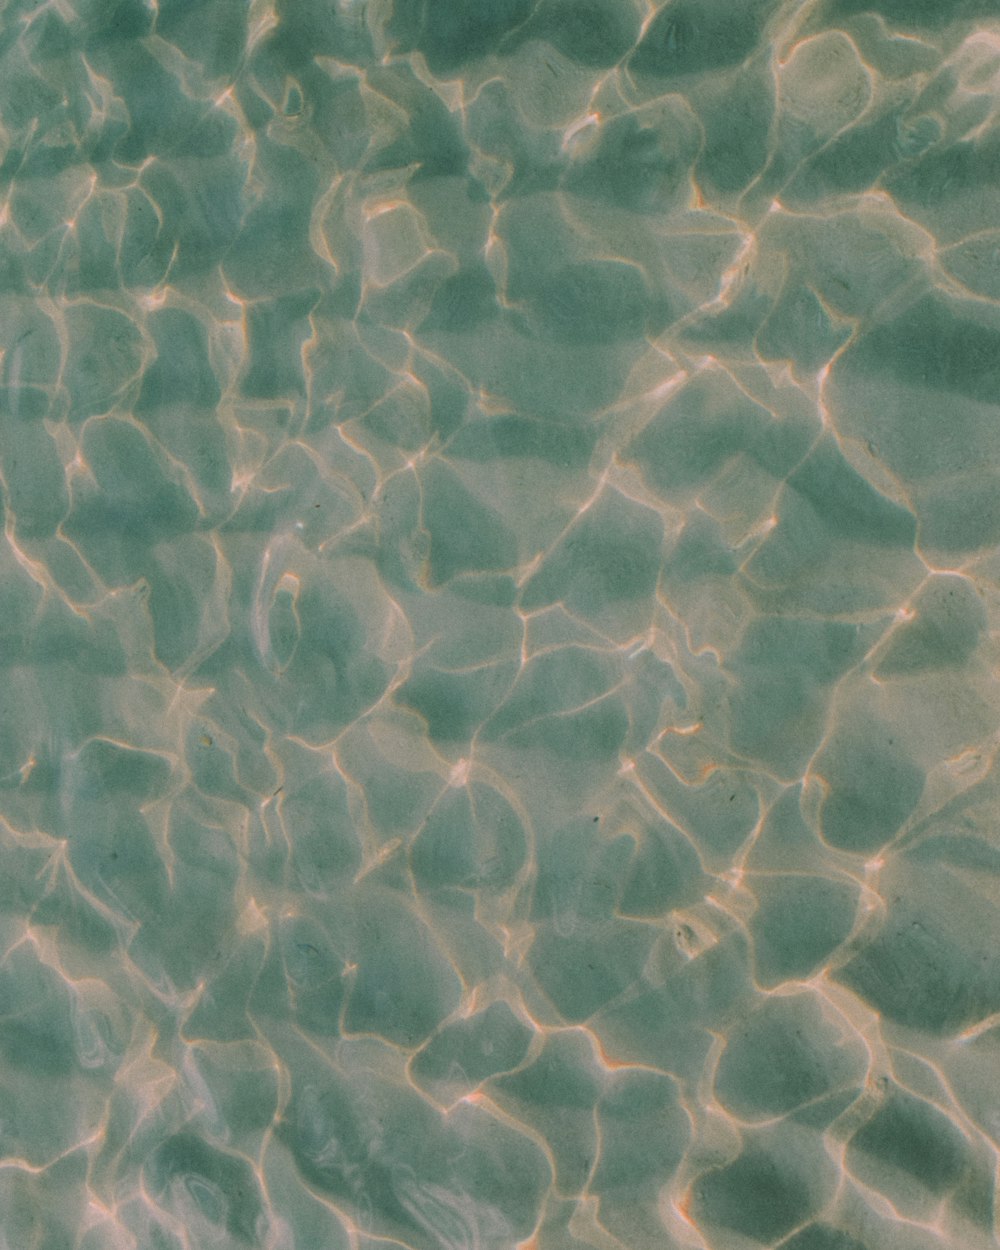 水は砂に日光を反射しています